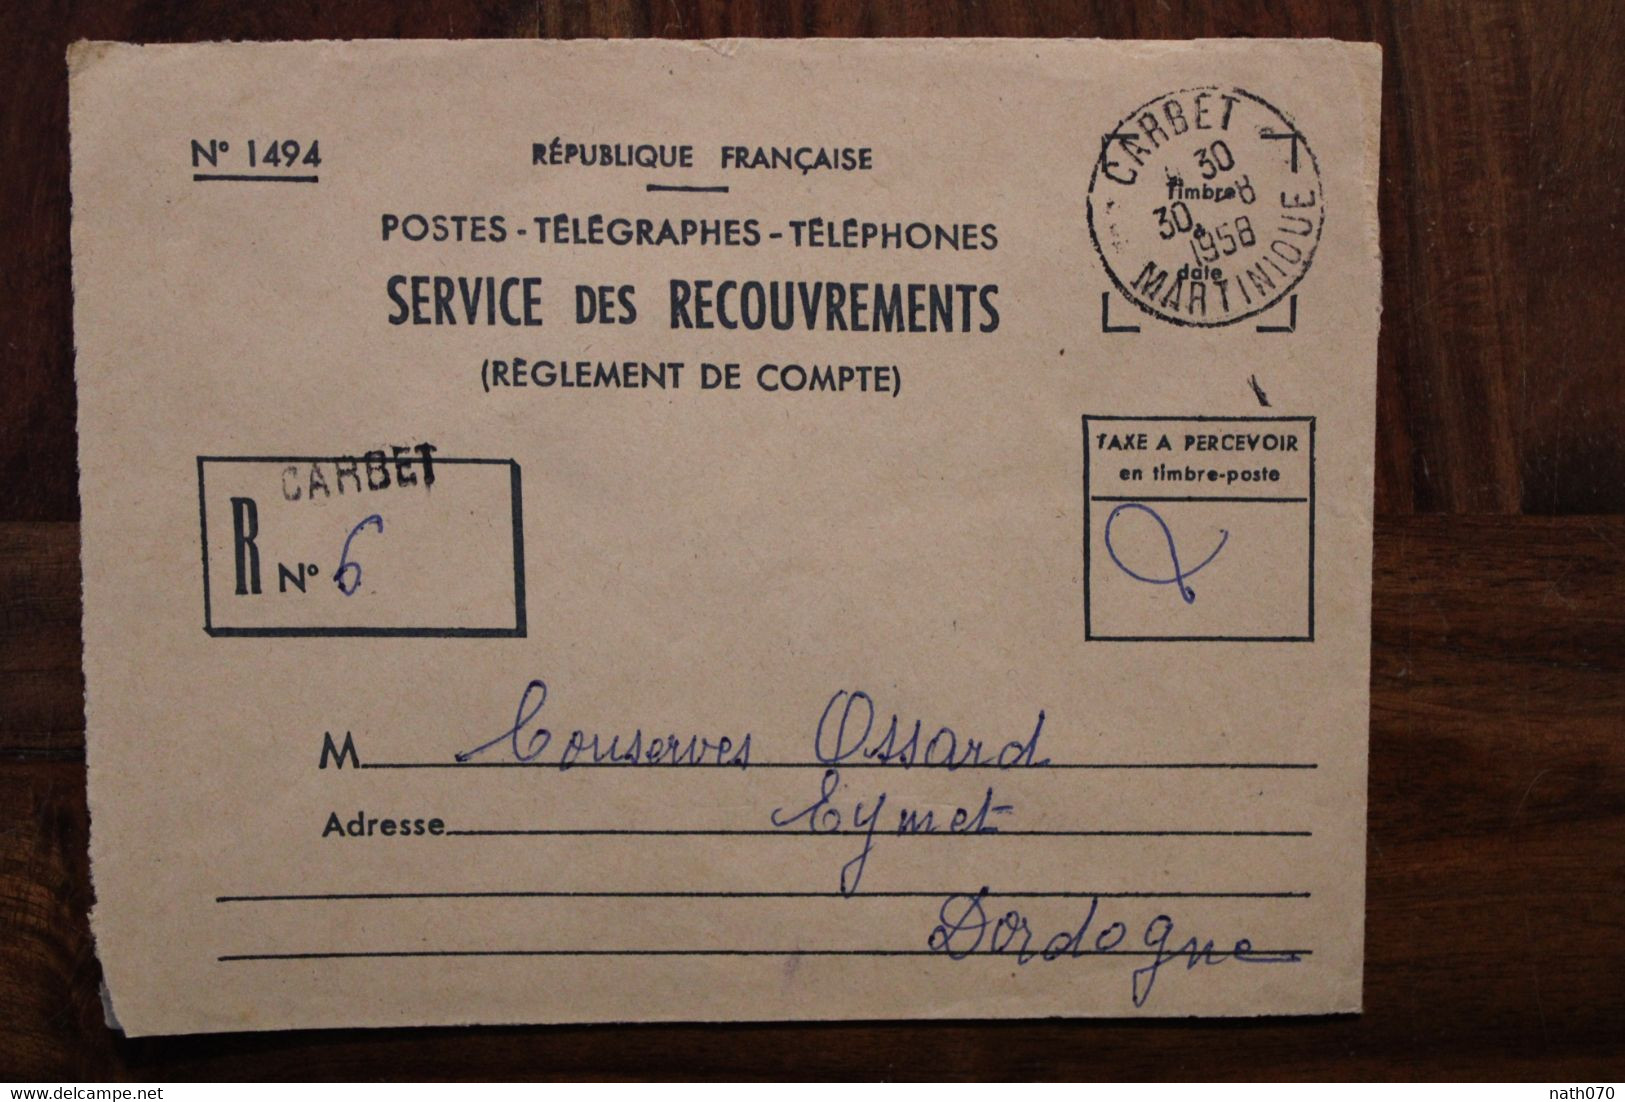 Martinique 1958 Carbet Cover Enveloppe PTT Recouvrement France Oblit. Mécanique Taxe Recommandé - Briefe U. Dokumente